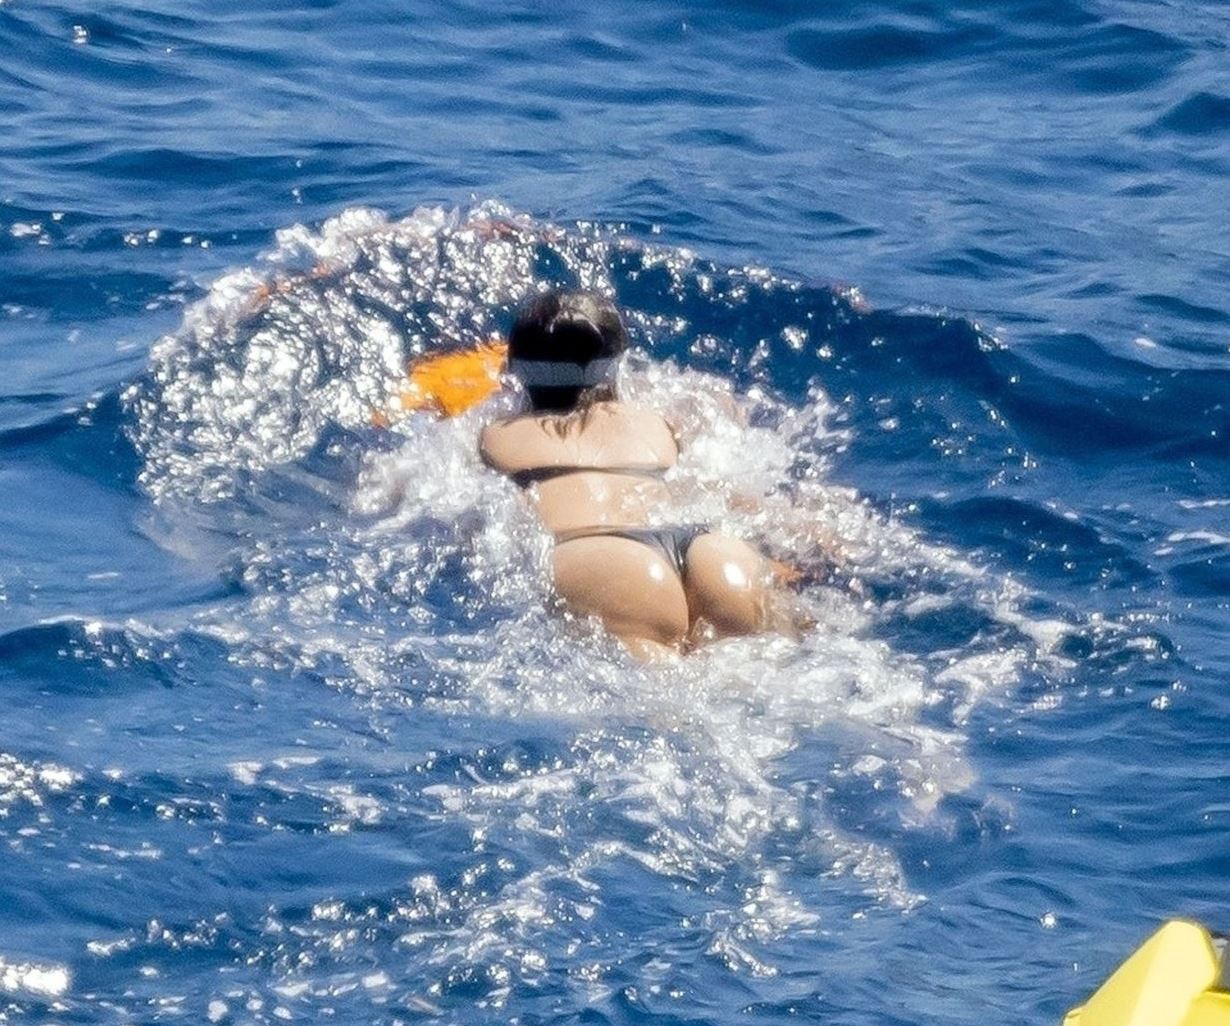 Селена Гомес похвасталась огромным бюстом во время отдыха с подружками на яхте. ТОП фото Селены Гомес в купальнике, сделанных папарацци